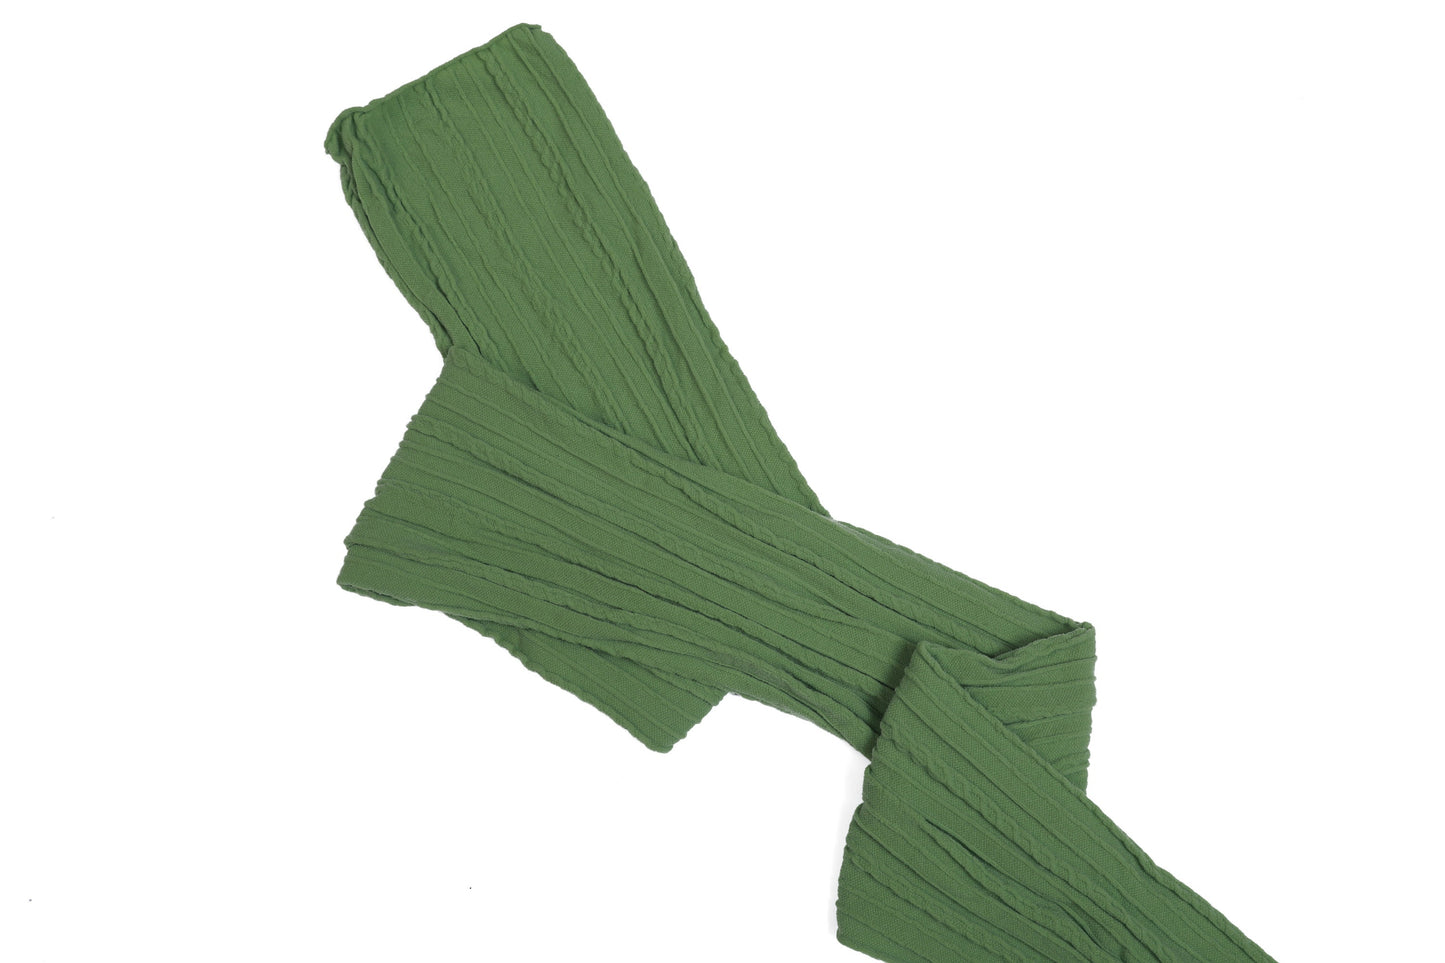 Kiwi Stretch Braided Nylon Stretch Fabric Strips 3" x 44"